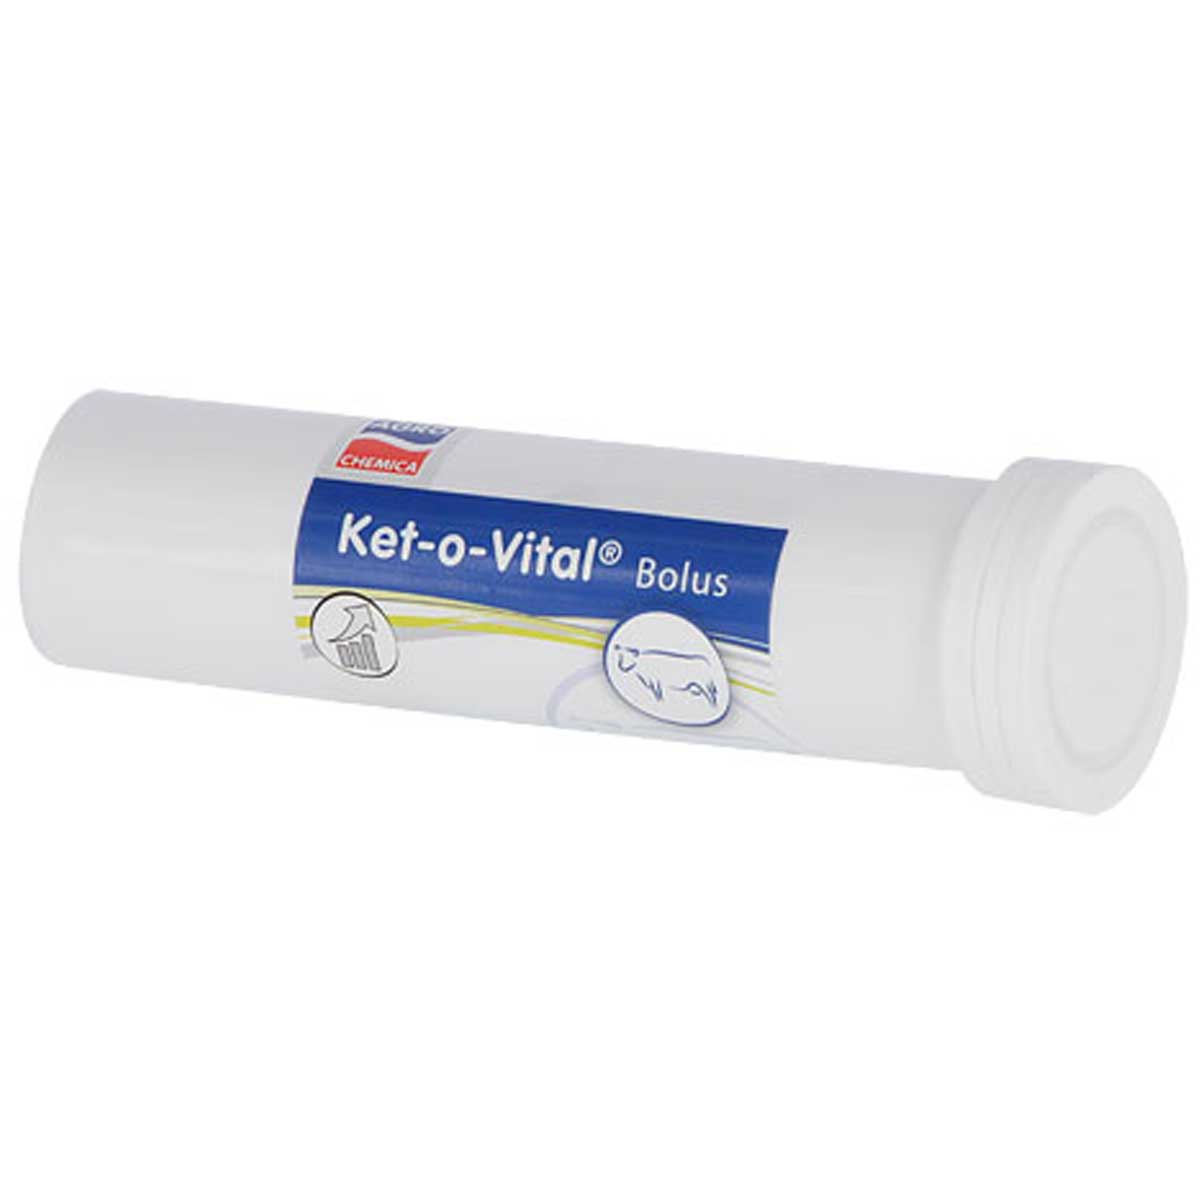 Ket-o-Vital Energy Bolus (Ketose)